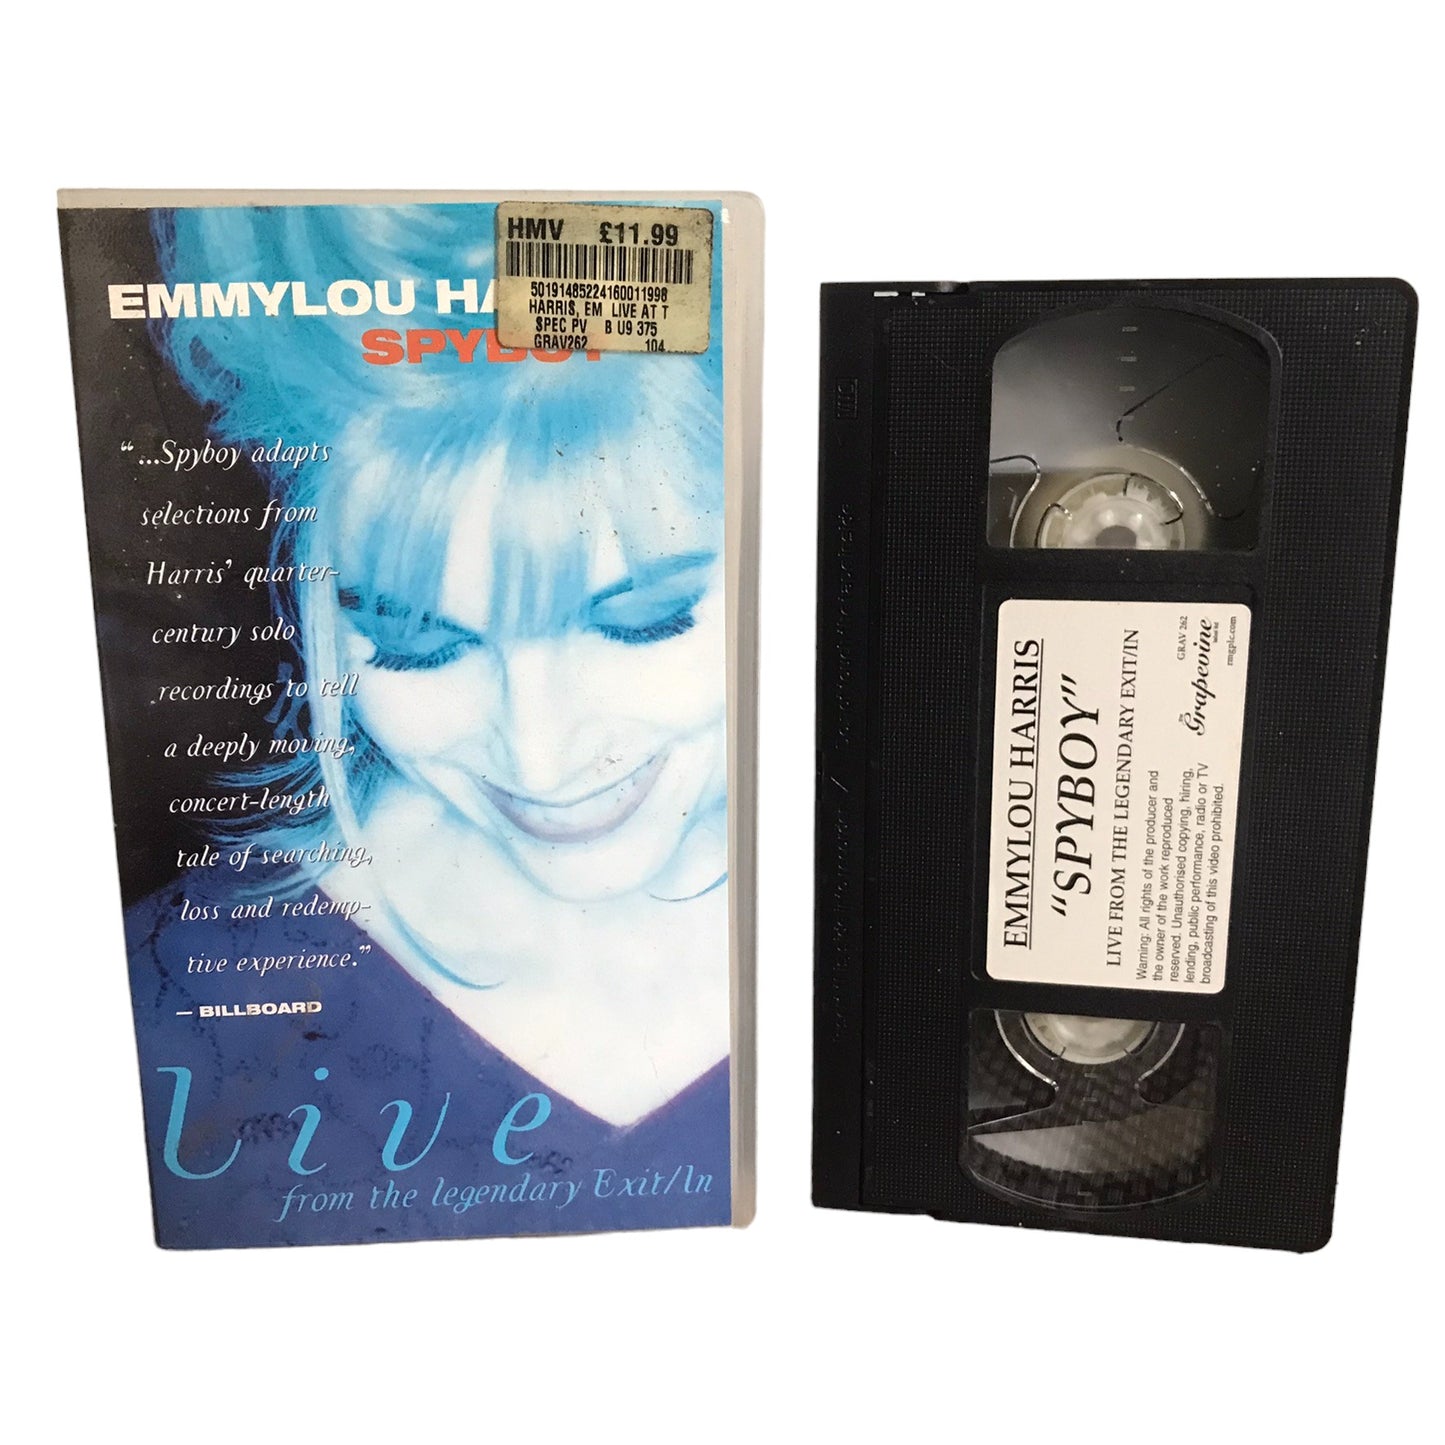 Emmylou Harris SPYBOY - David Allan - Grapevine - Music - Pal - VHS-